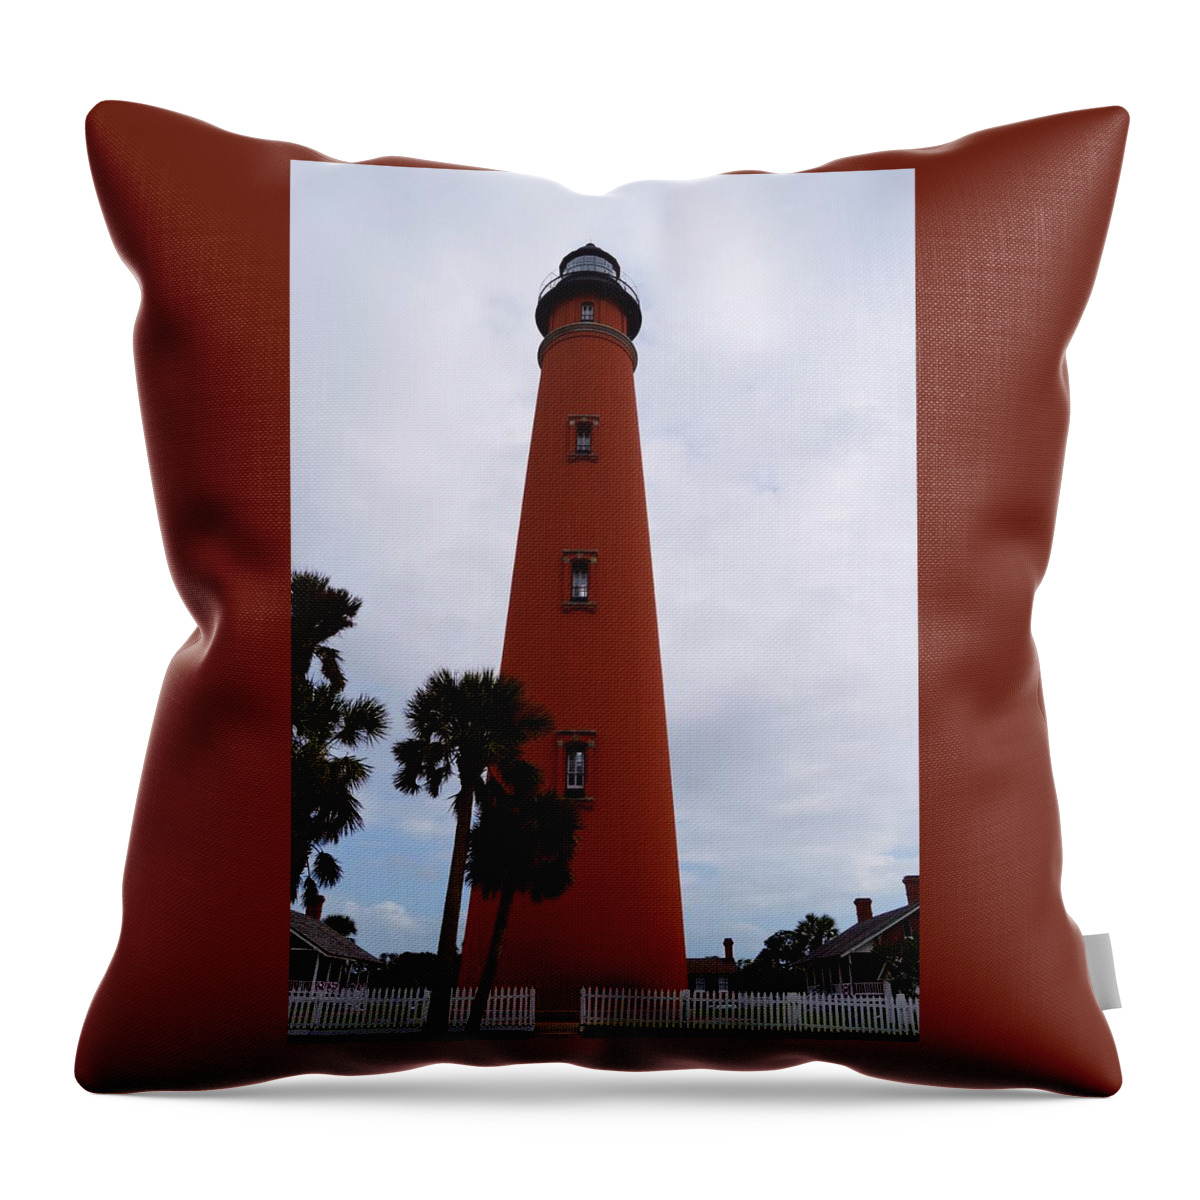 Ponce De Leon Lighthouse Throw Pillow featuring the photograph Ponce De Leon Lighthouse by Warren Thompson